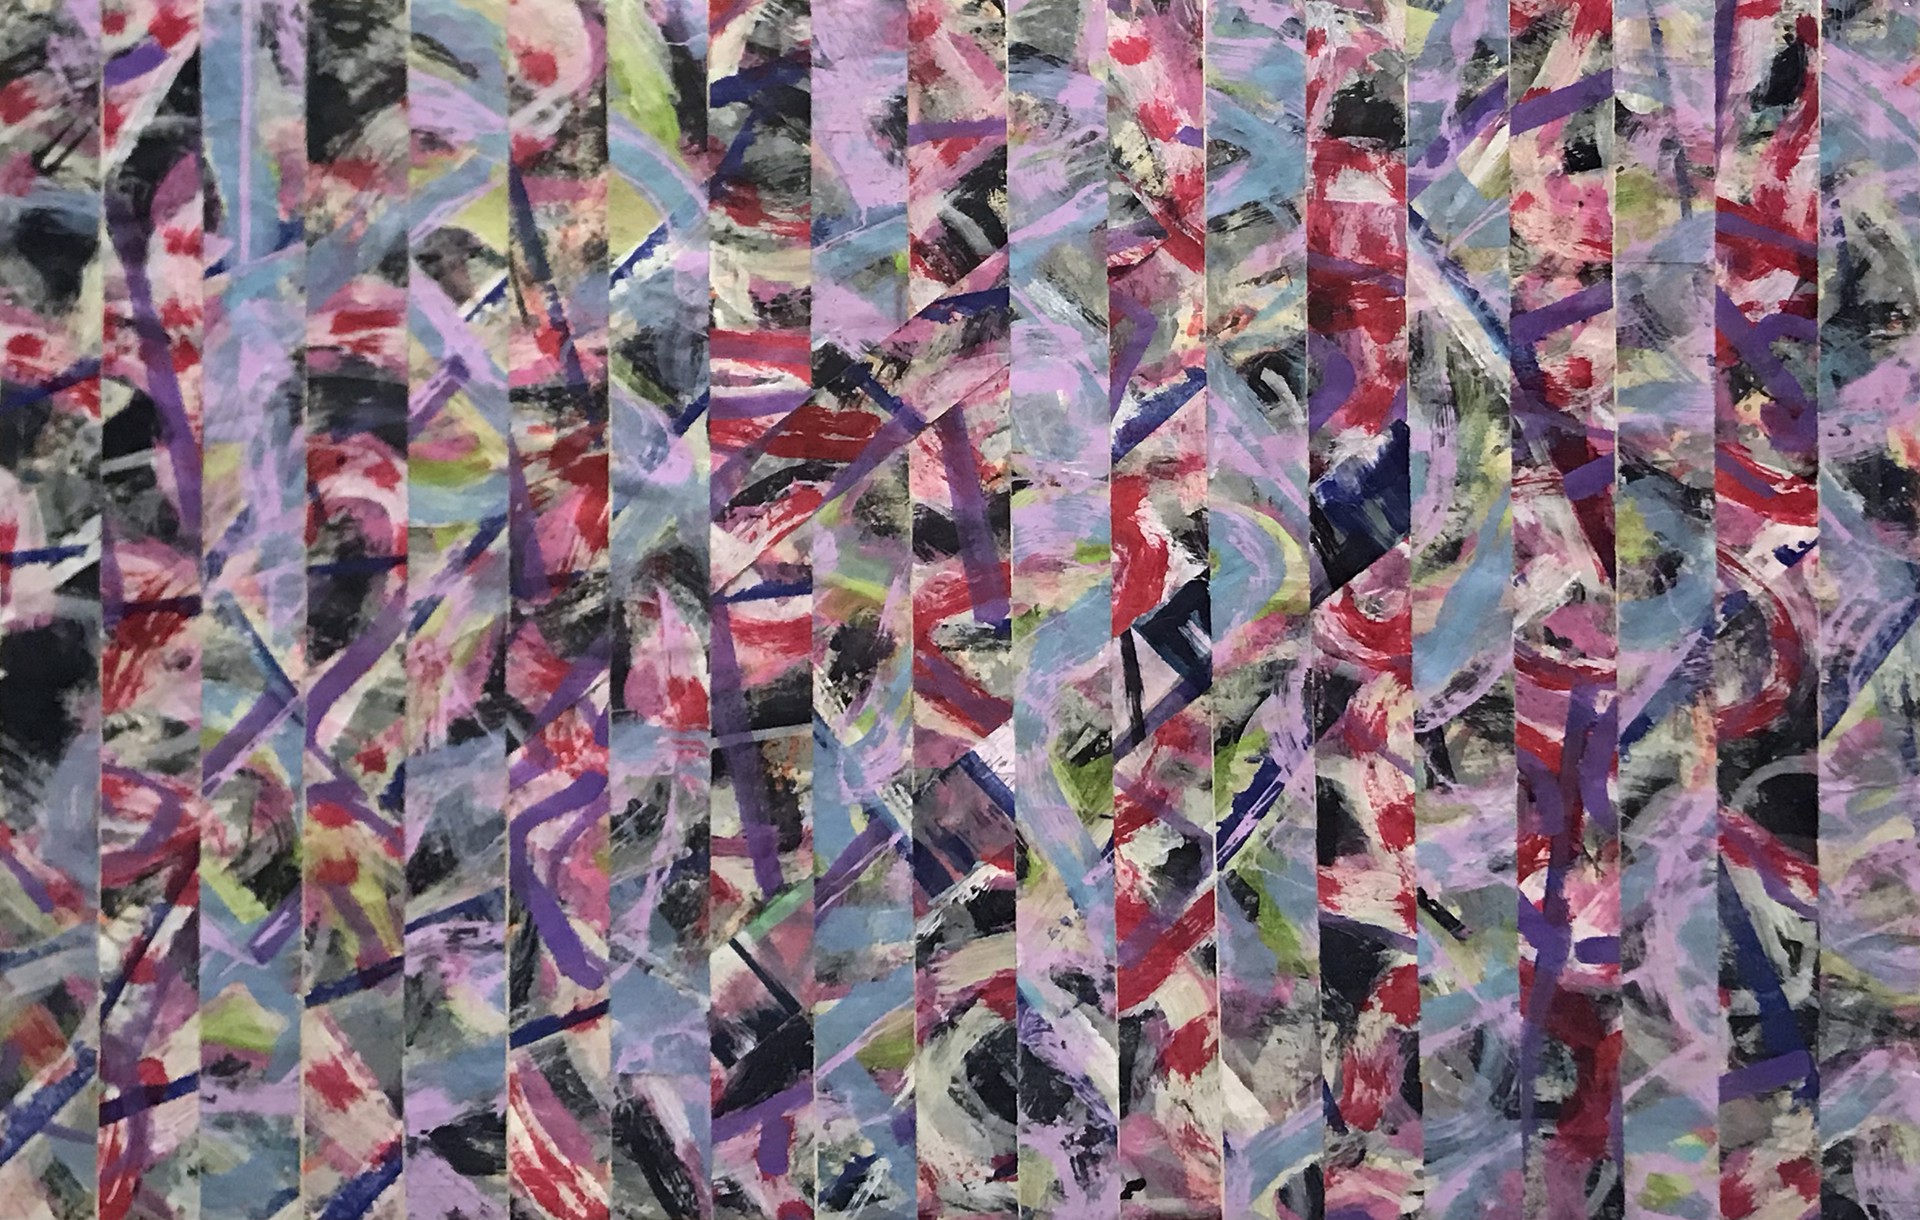 Untitled (Pink Weaving) by Ibsen Espada